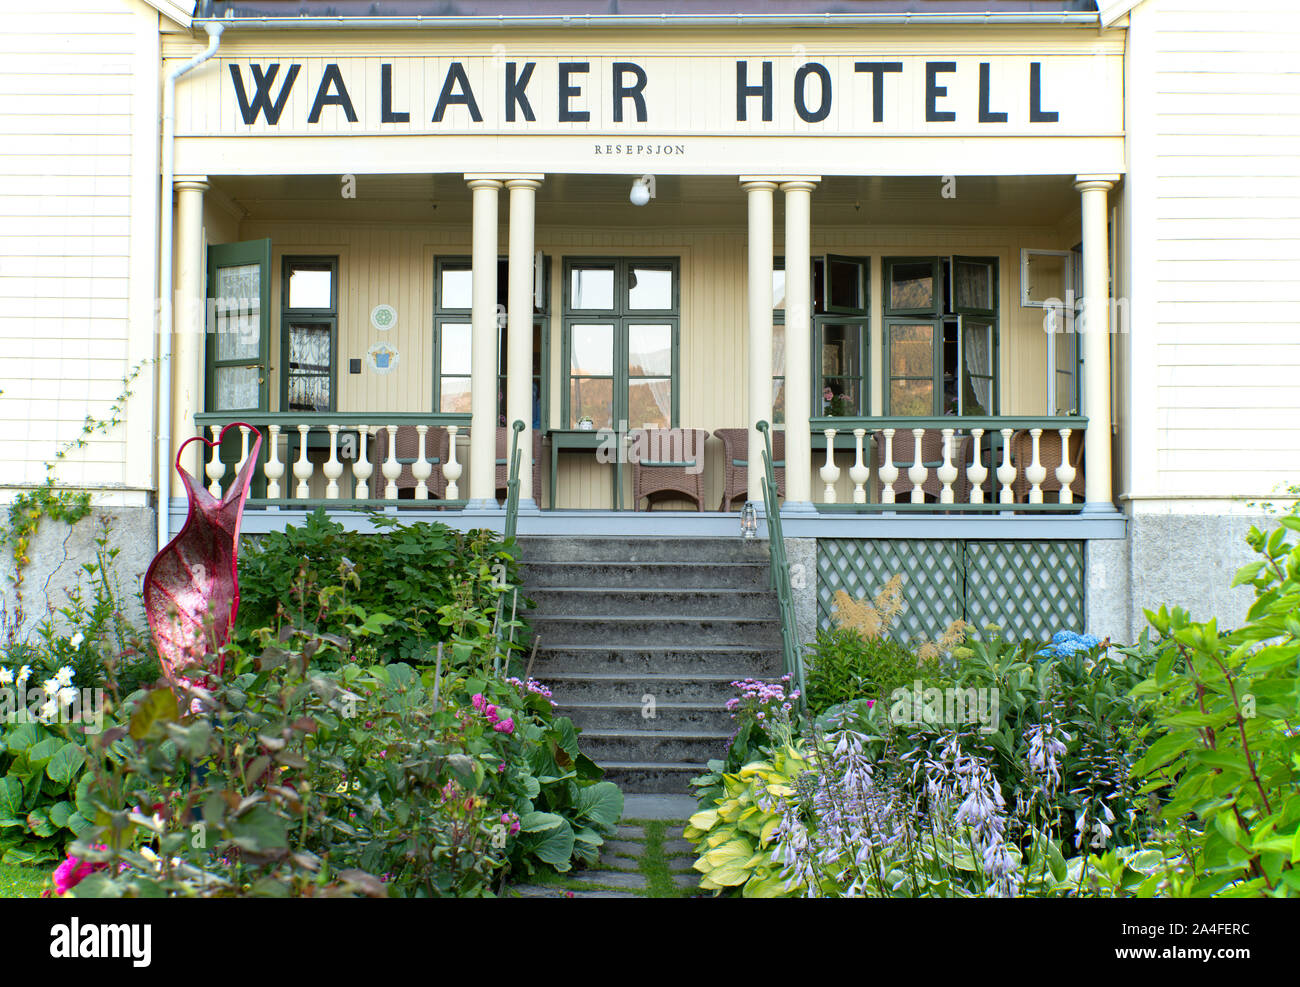 Le Walaker Hotell, un hôtel traditionnel avec un beau jardin à l'avant sur le Fjord de Lustra Solvorn, Norvège Banque D'Images